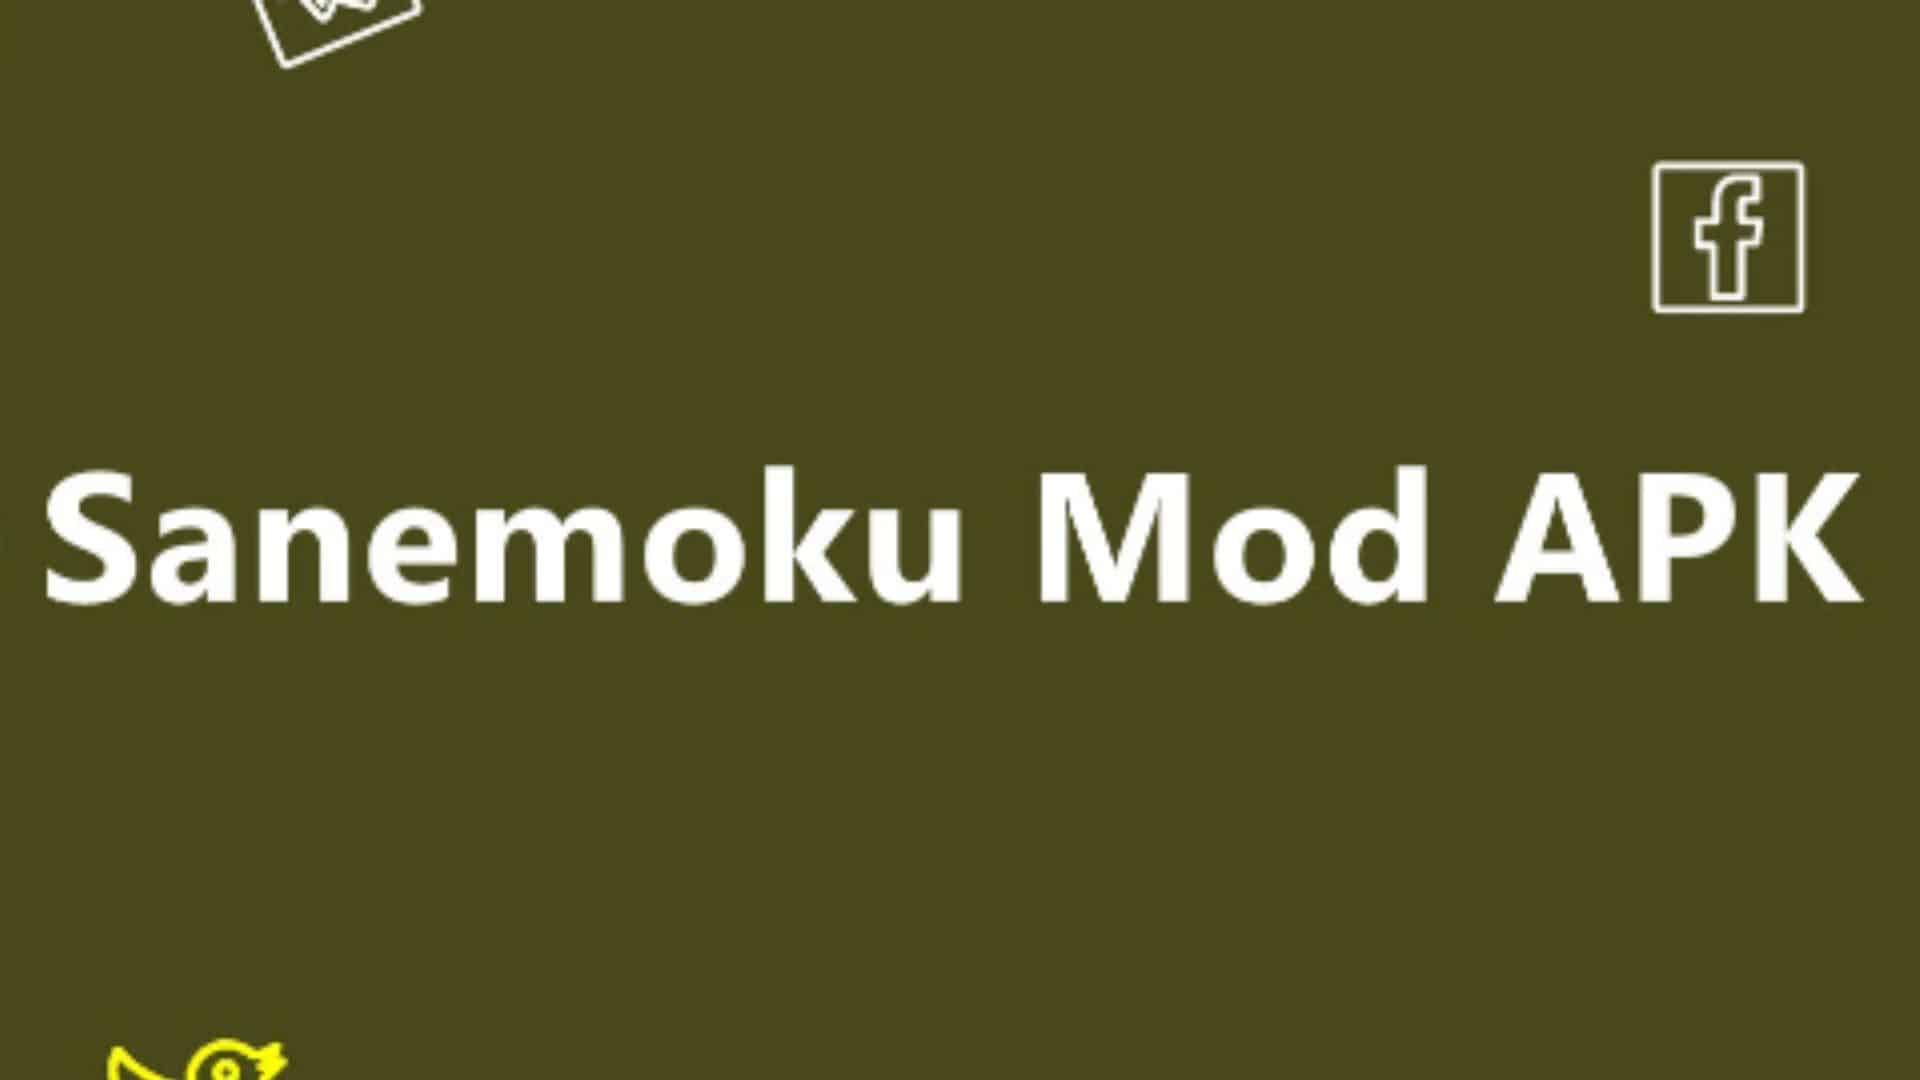 Download aplikasi atau game yang sudah dimodifikasi pada aplikasi Sanemoku Apk Mod